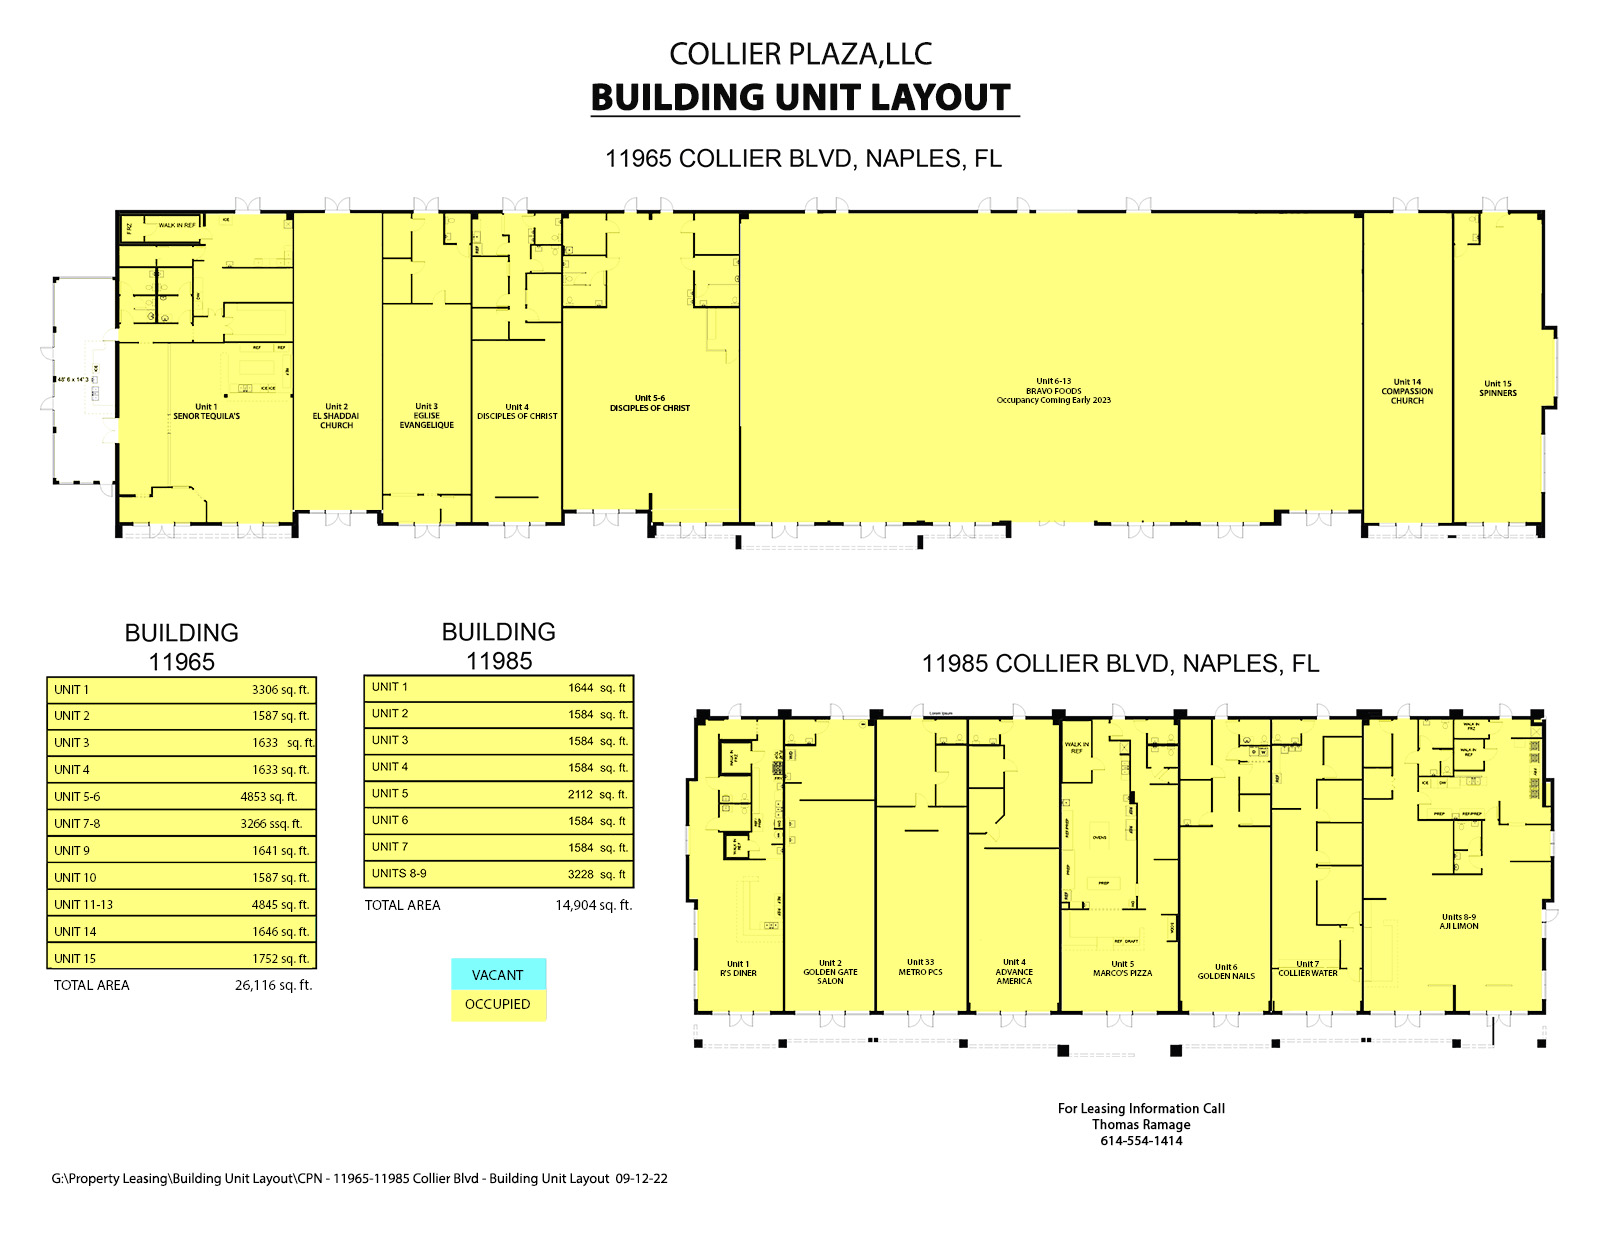 CPN - Building Unit Layout 2 09-12-2022 (002)